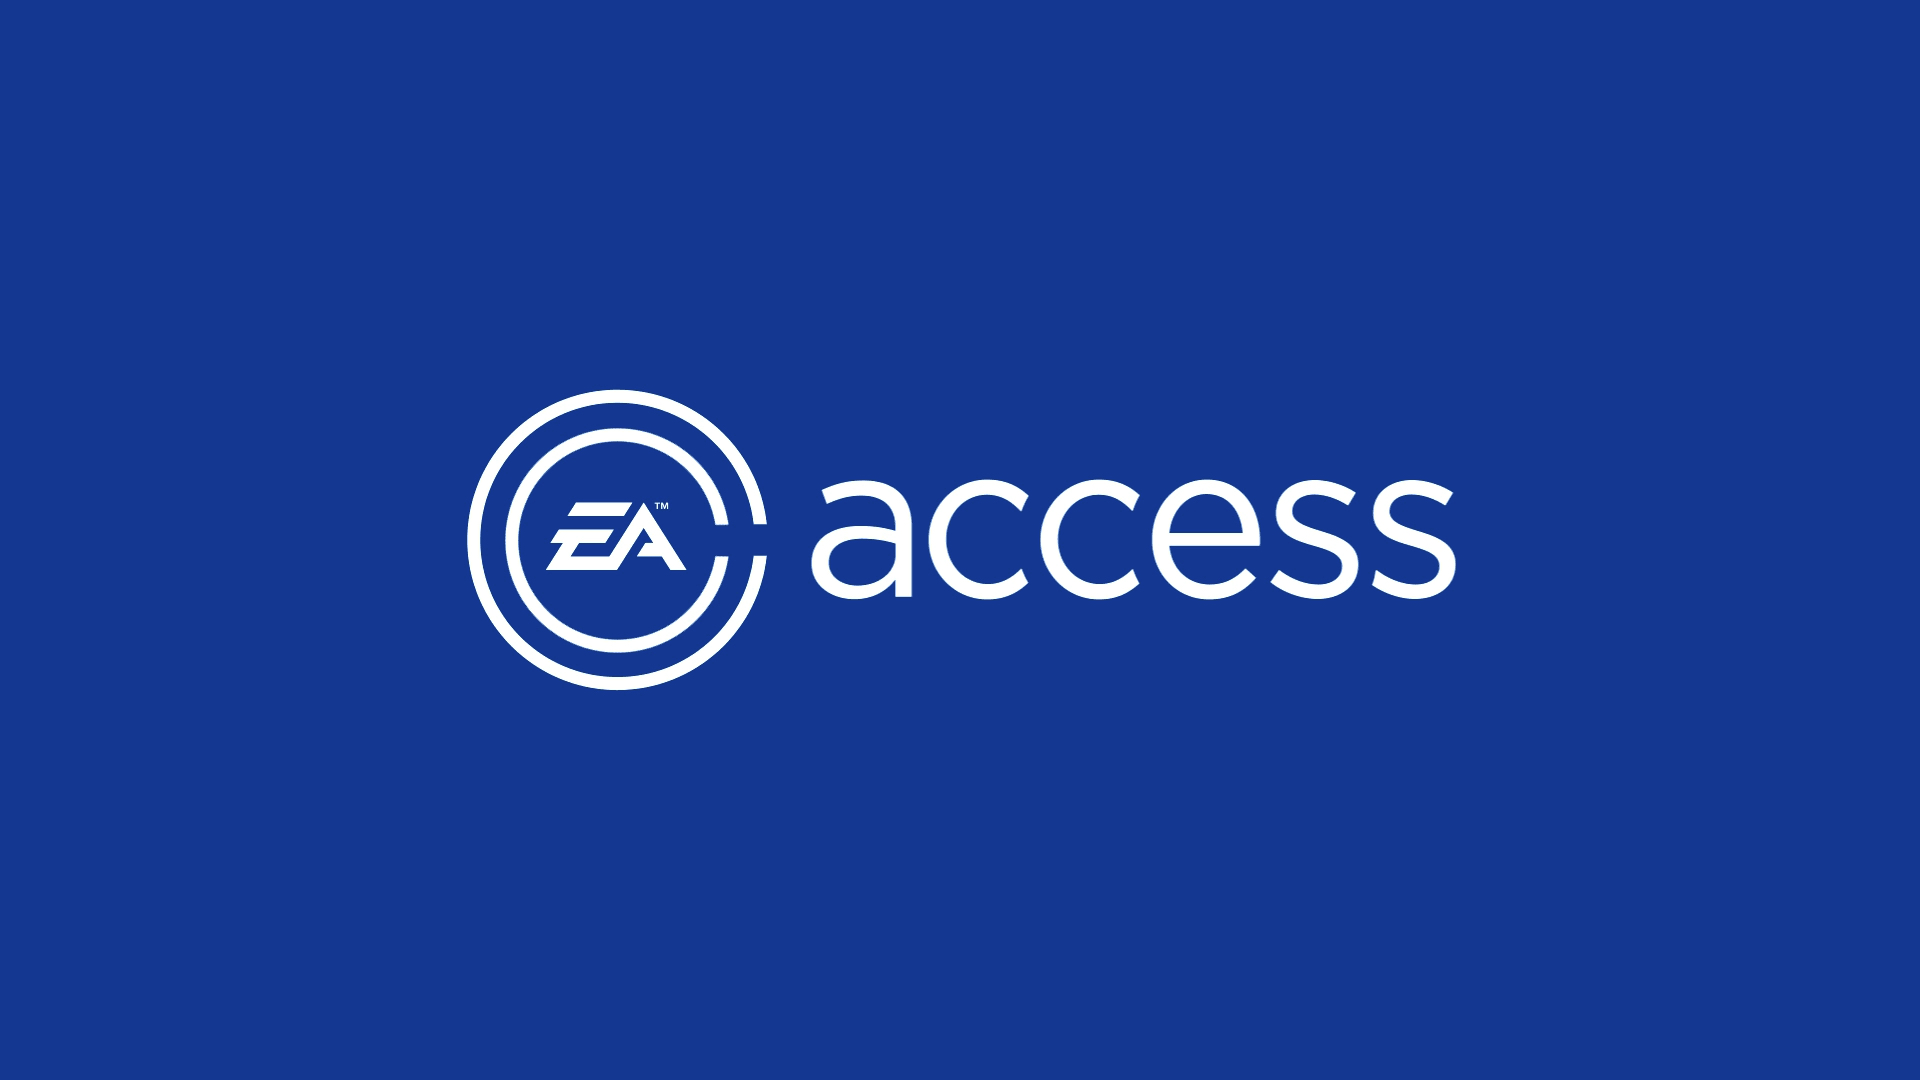 Ea Access